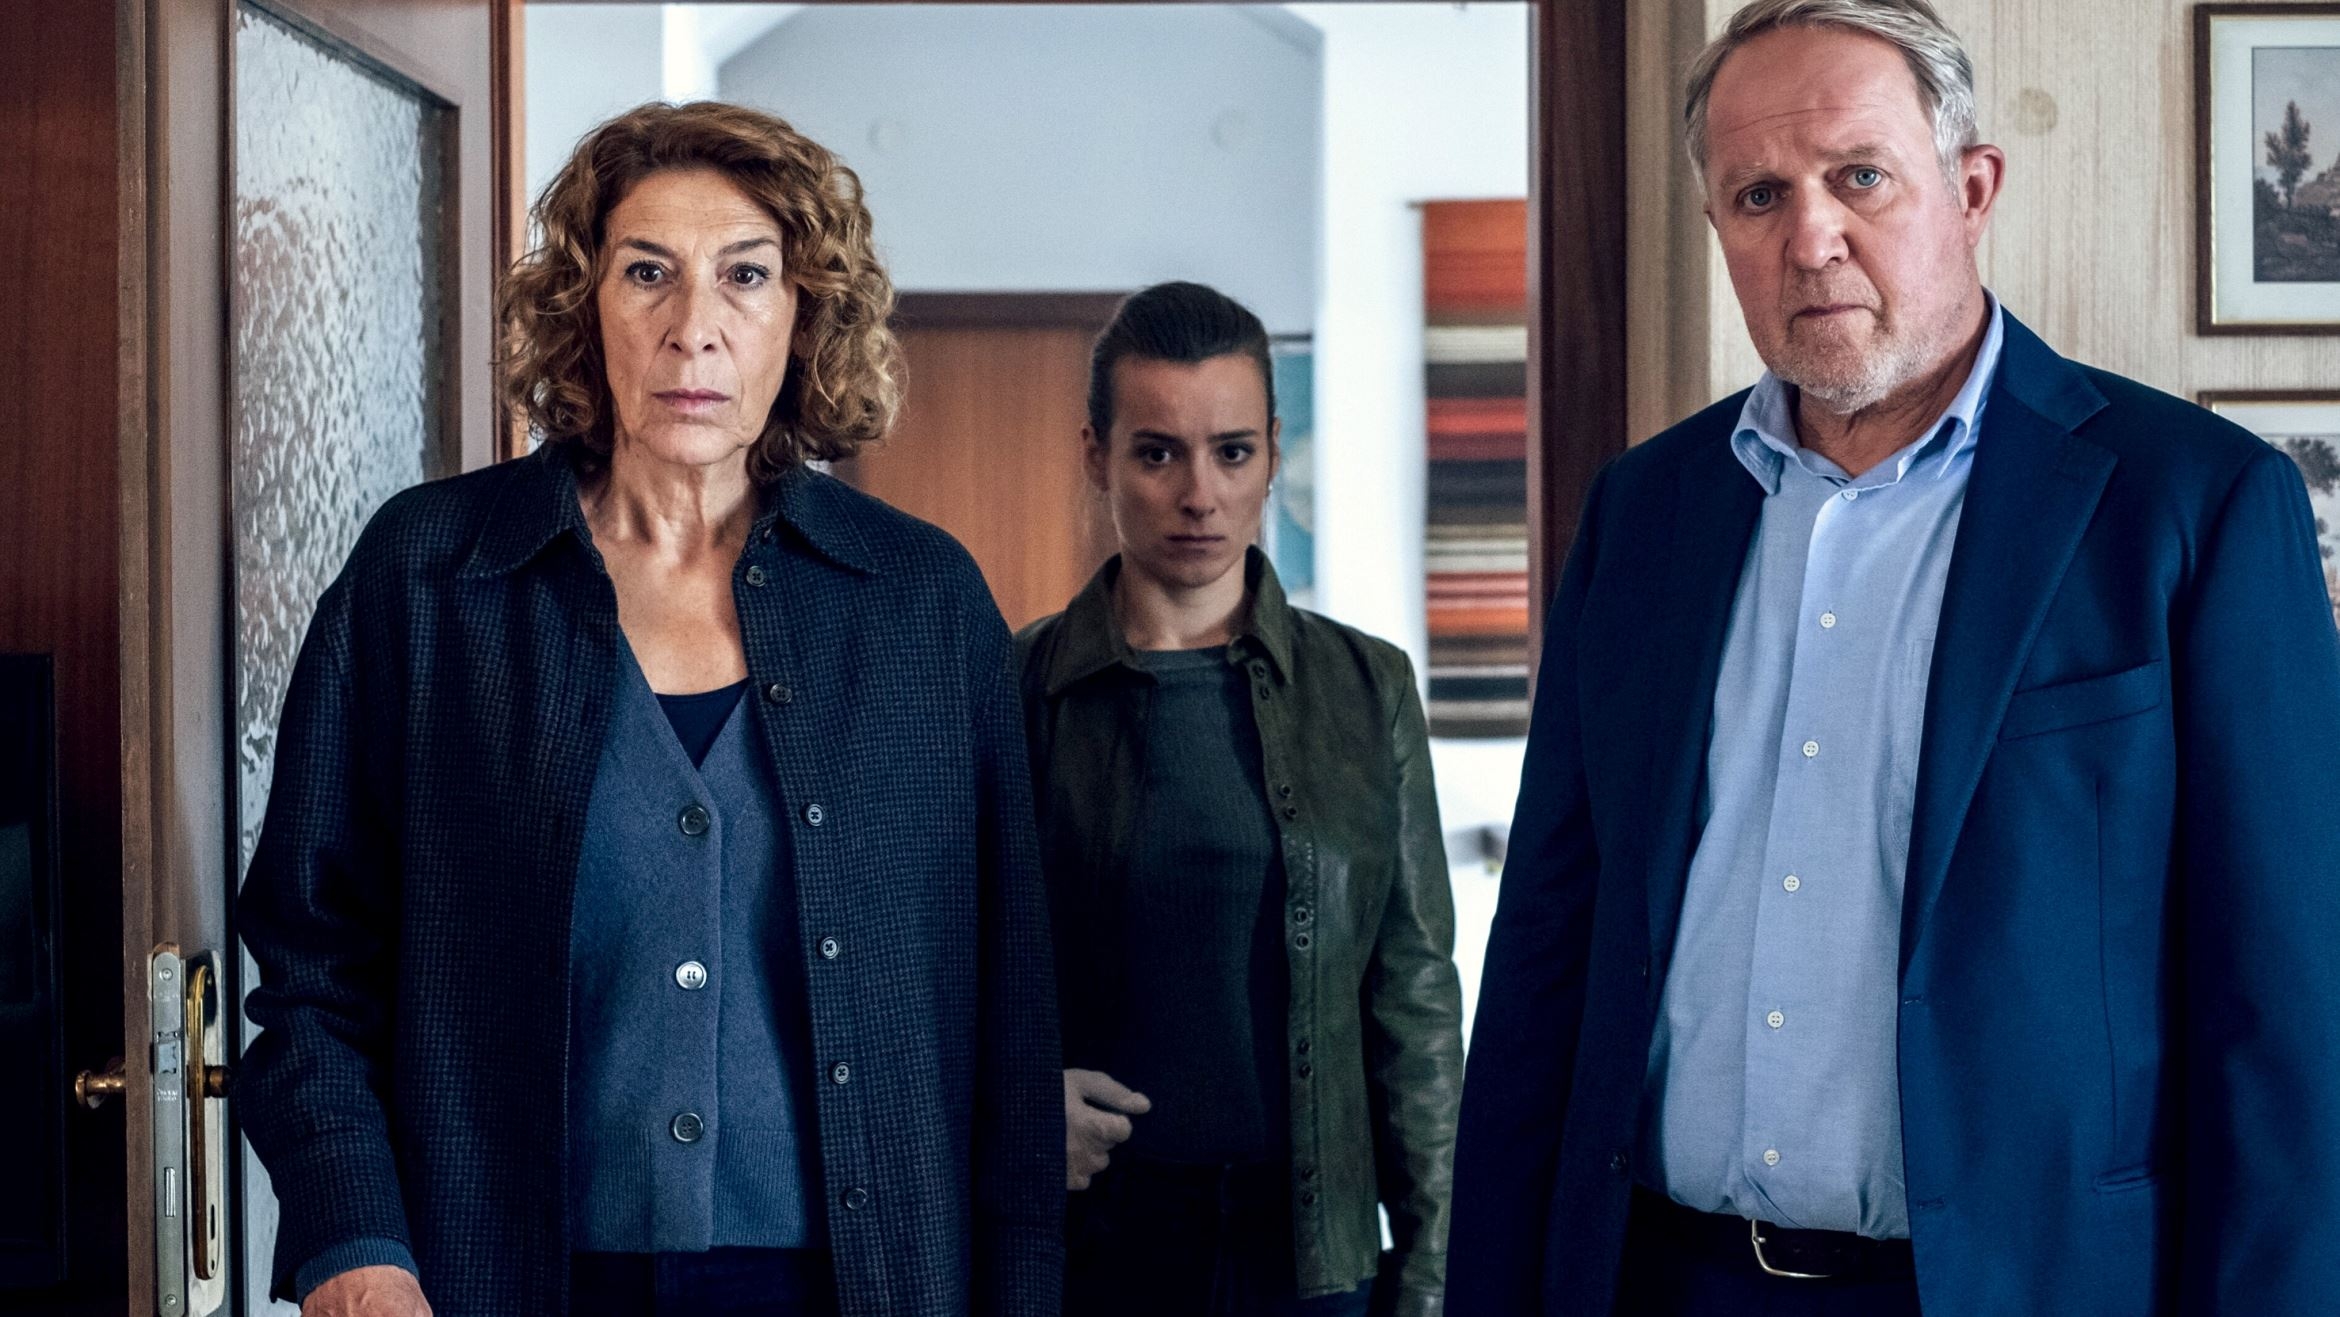 Adele Neuhauser, Christina Scherrer und Harald Krassnitzer (v.l.n.r.) im "Tatort: Alles was Recht ist" - 